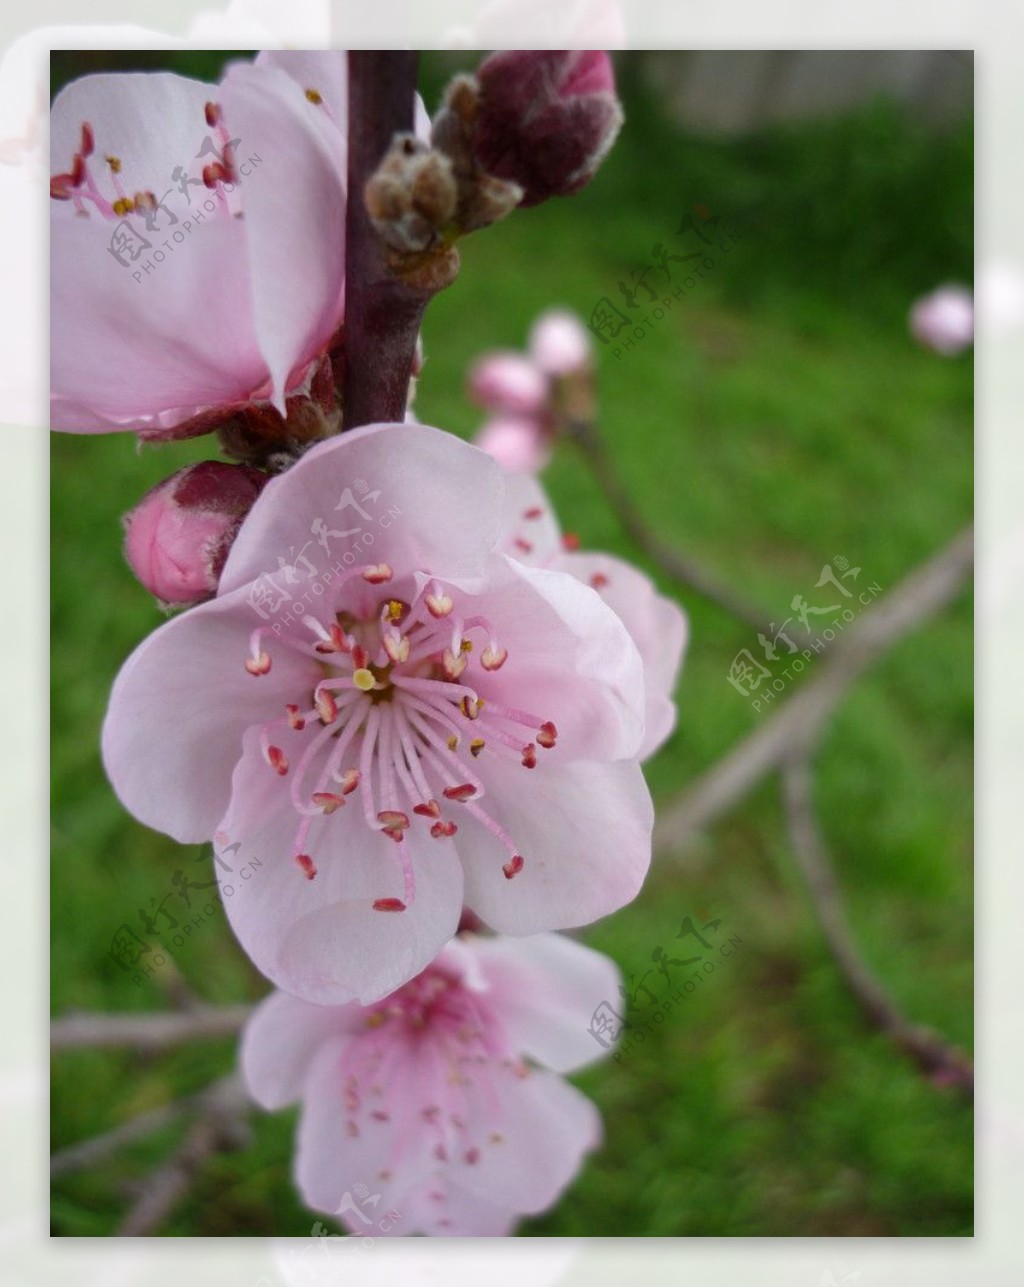 最美樱花季，到日本赏樱花吧！_世界